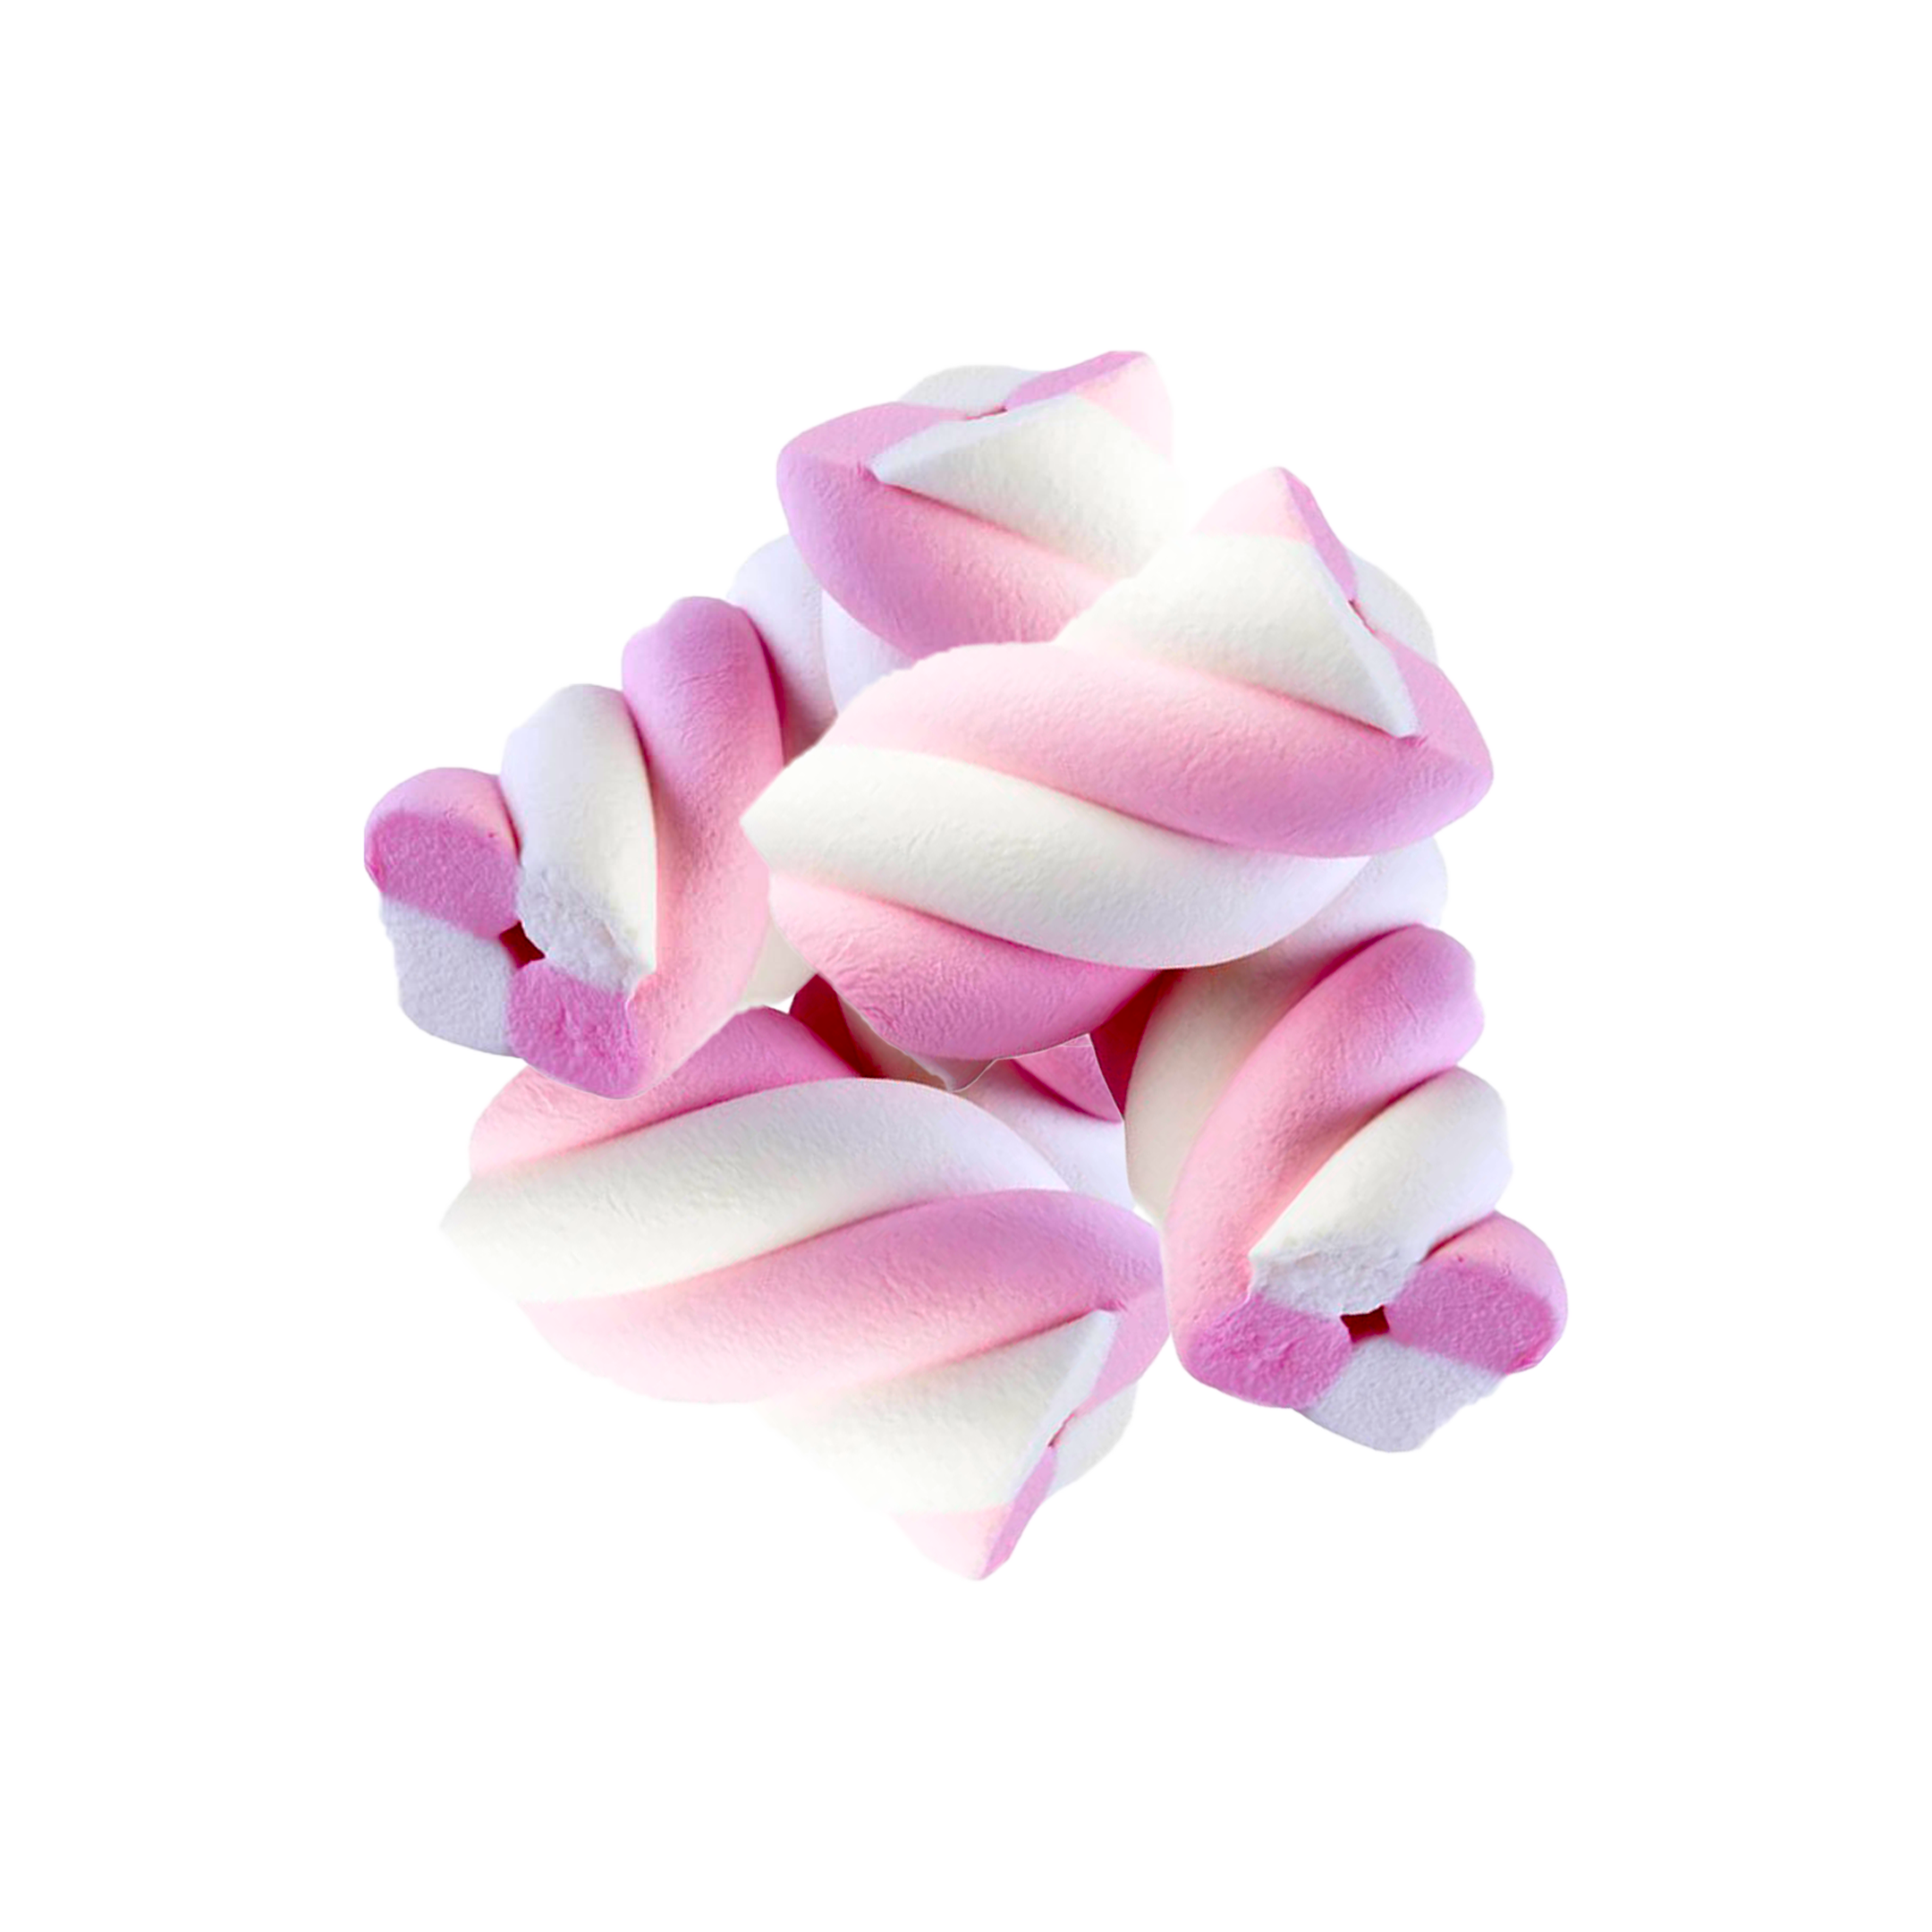 5 Pink Marshmallows